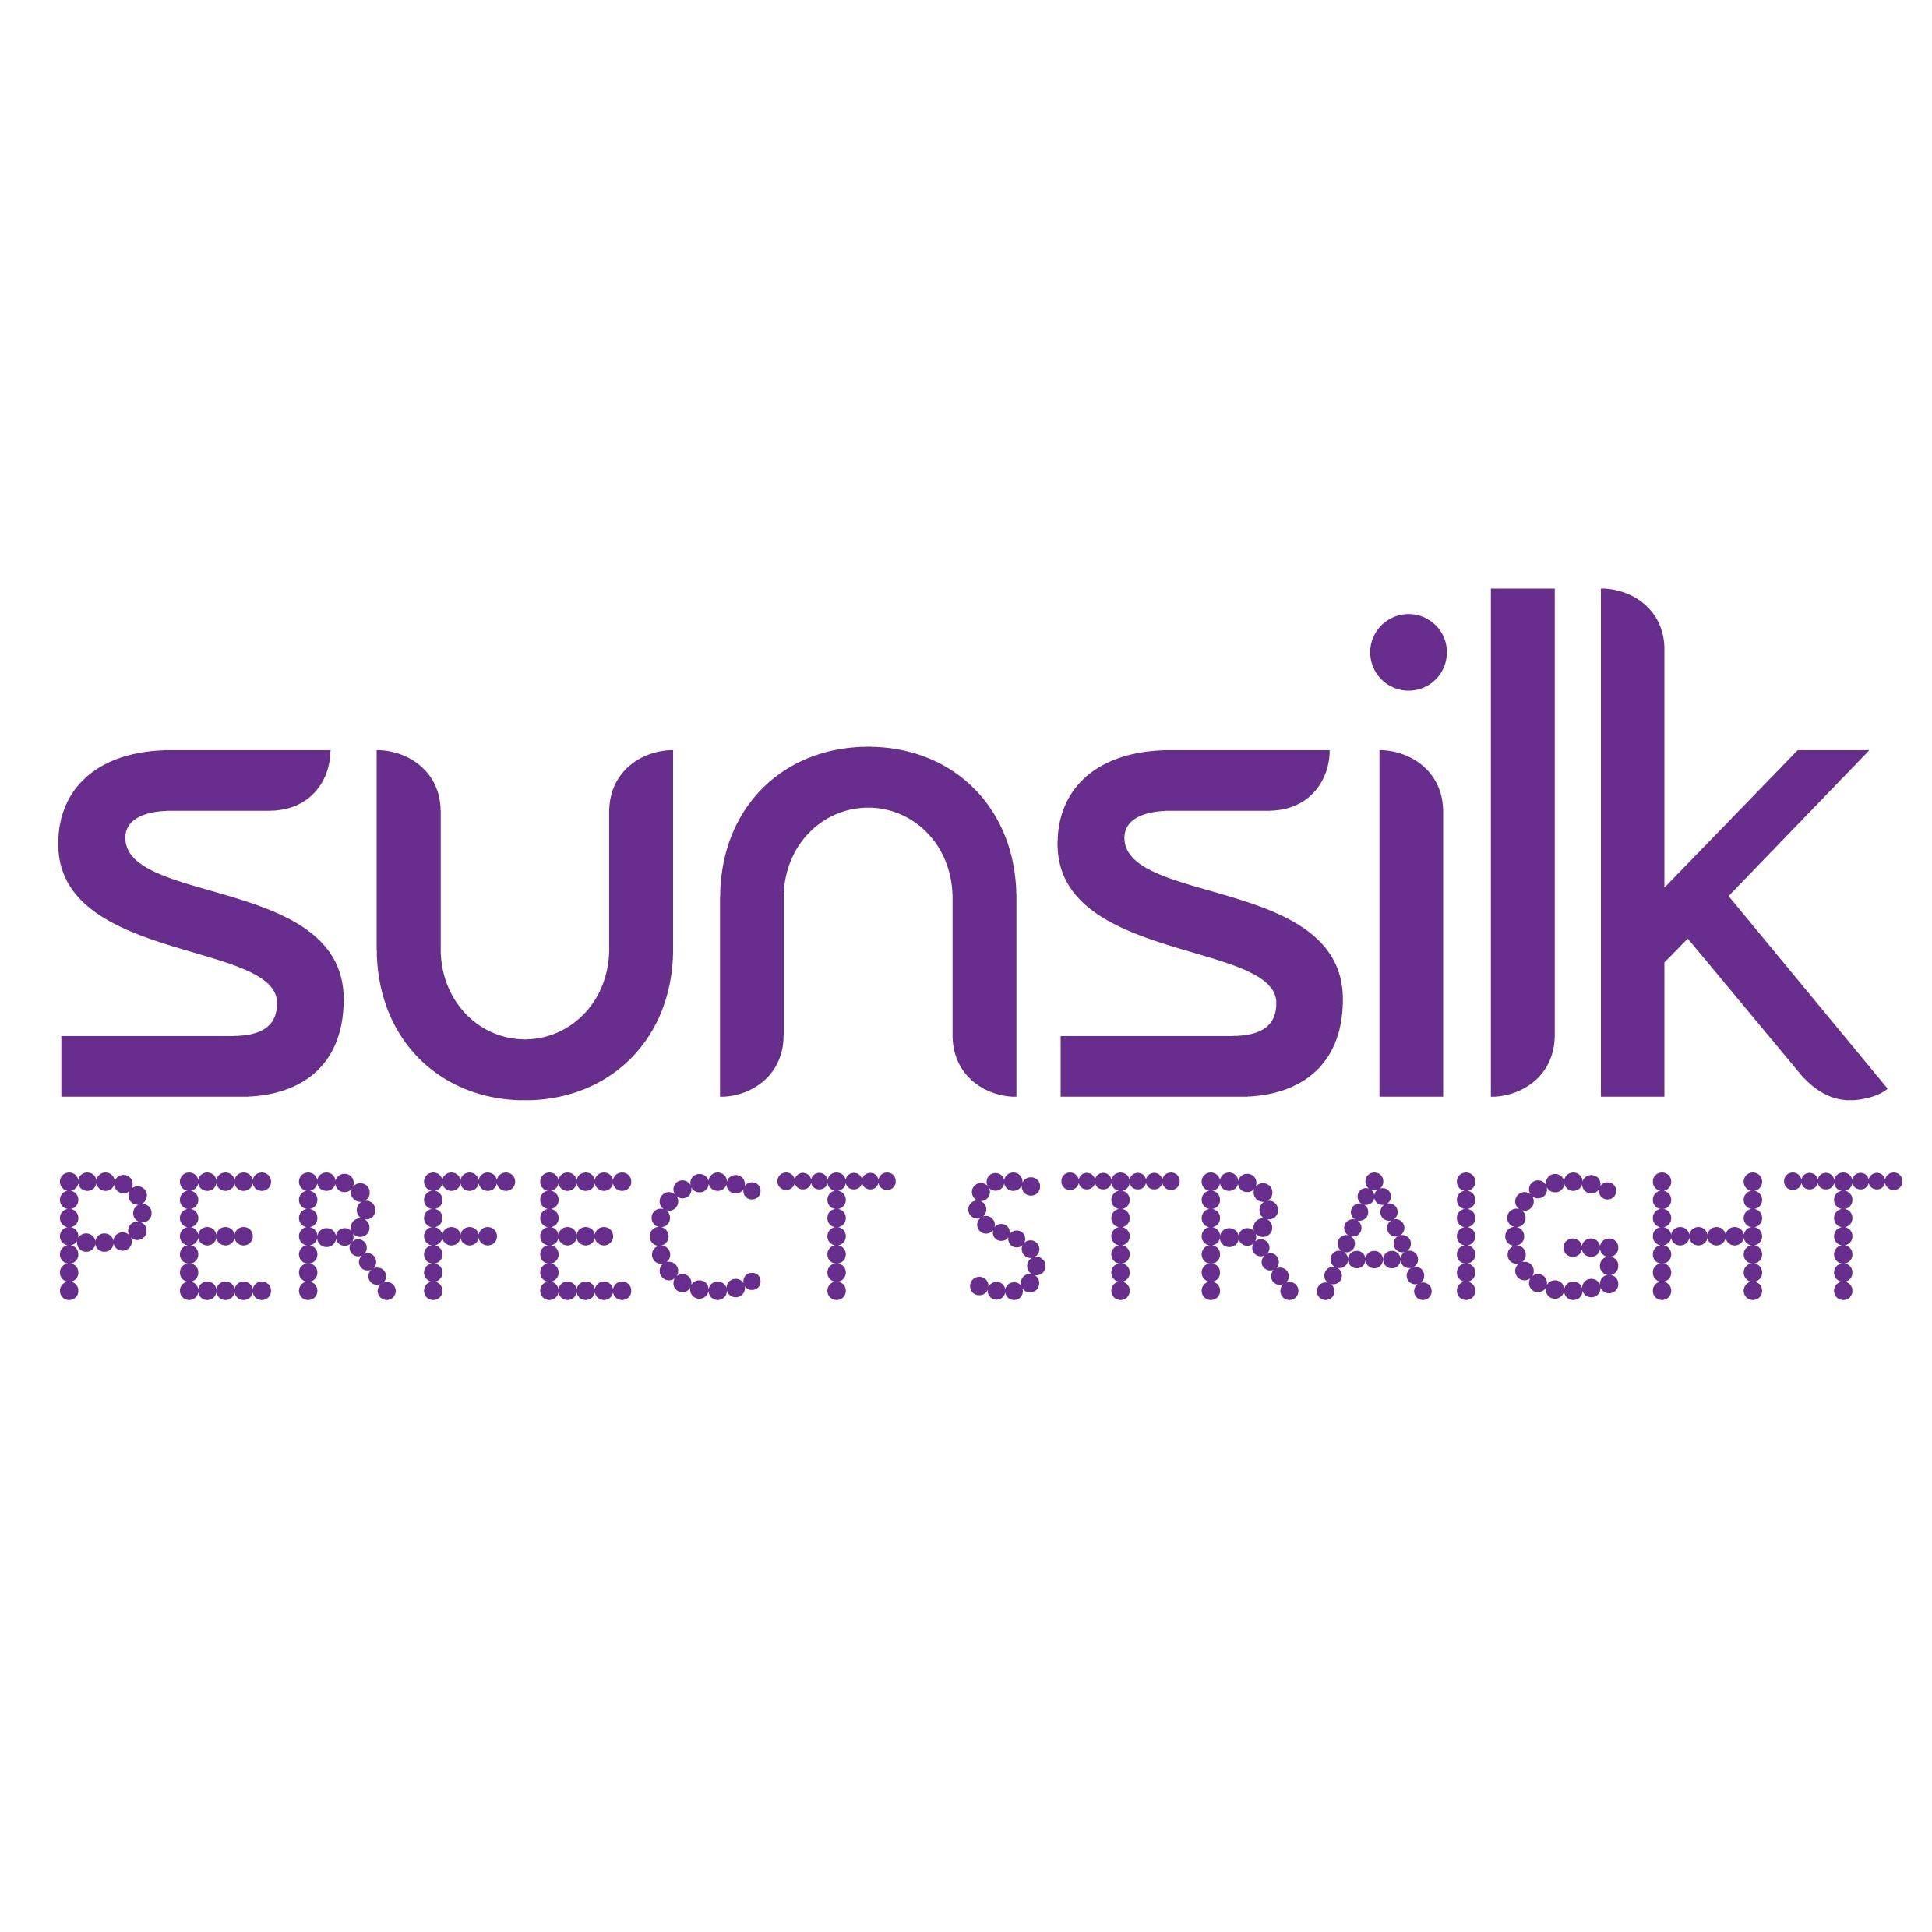 Sunsilk Logo - Sunsilk